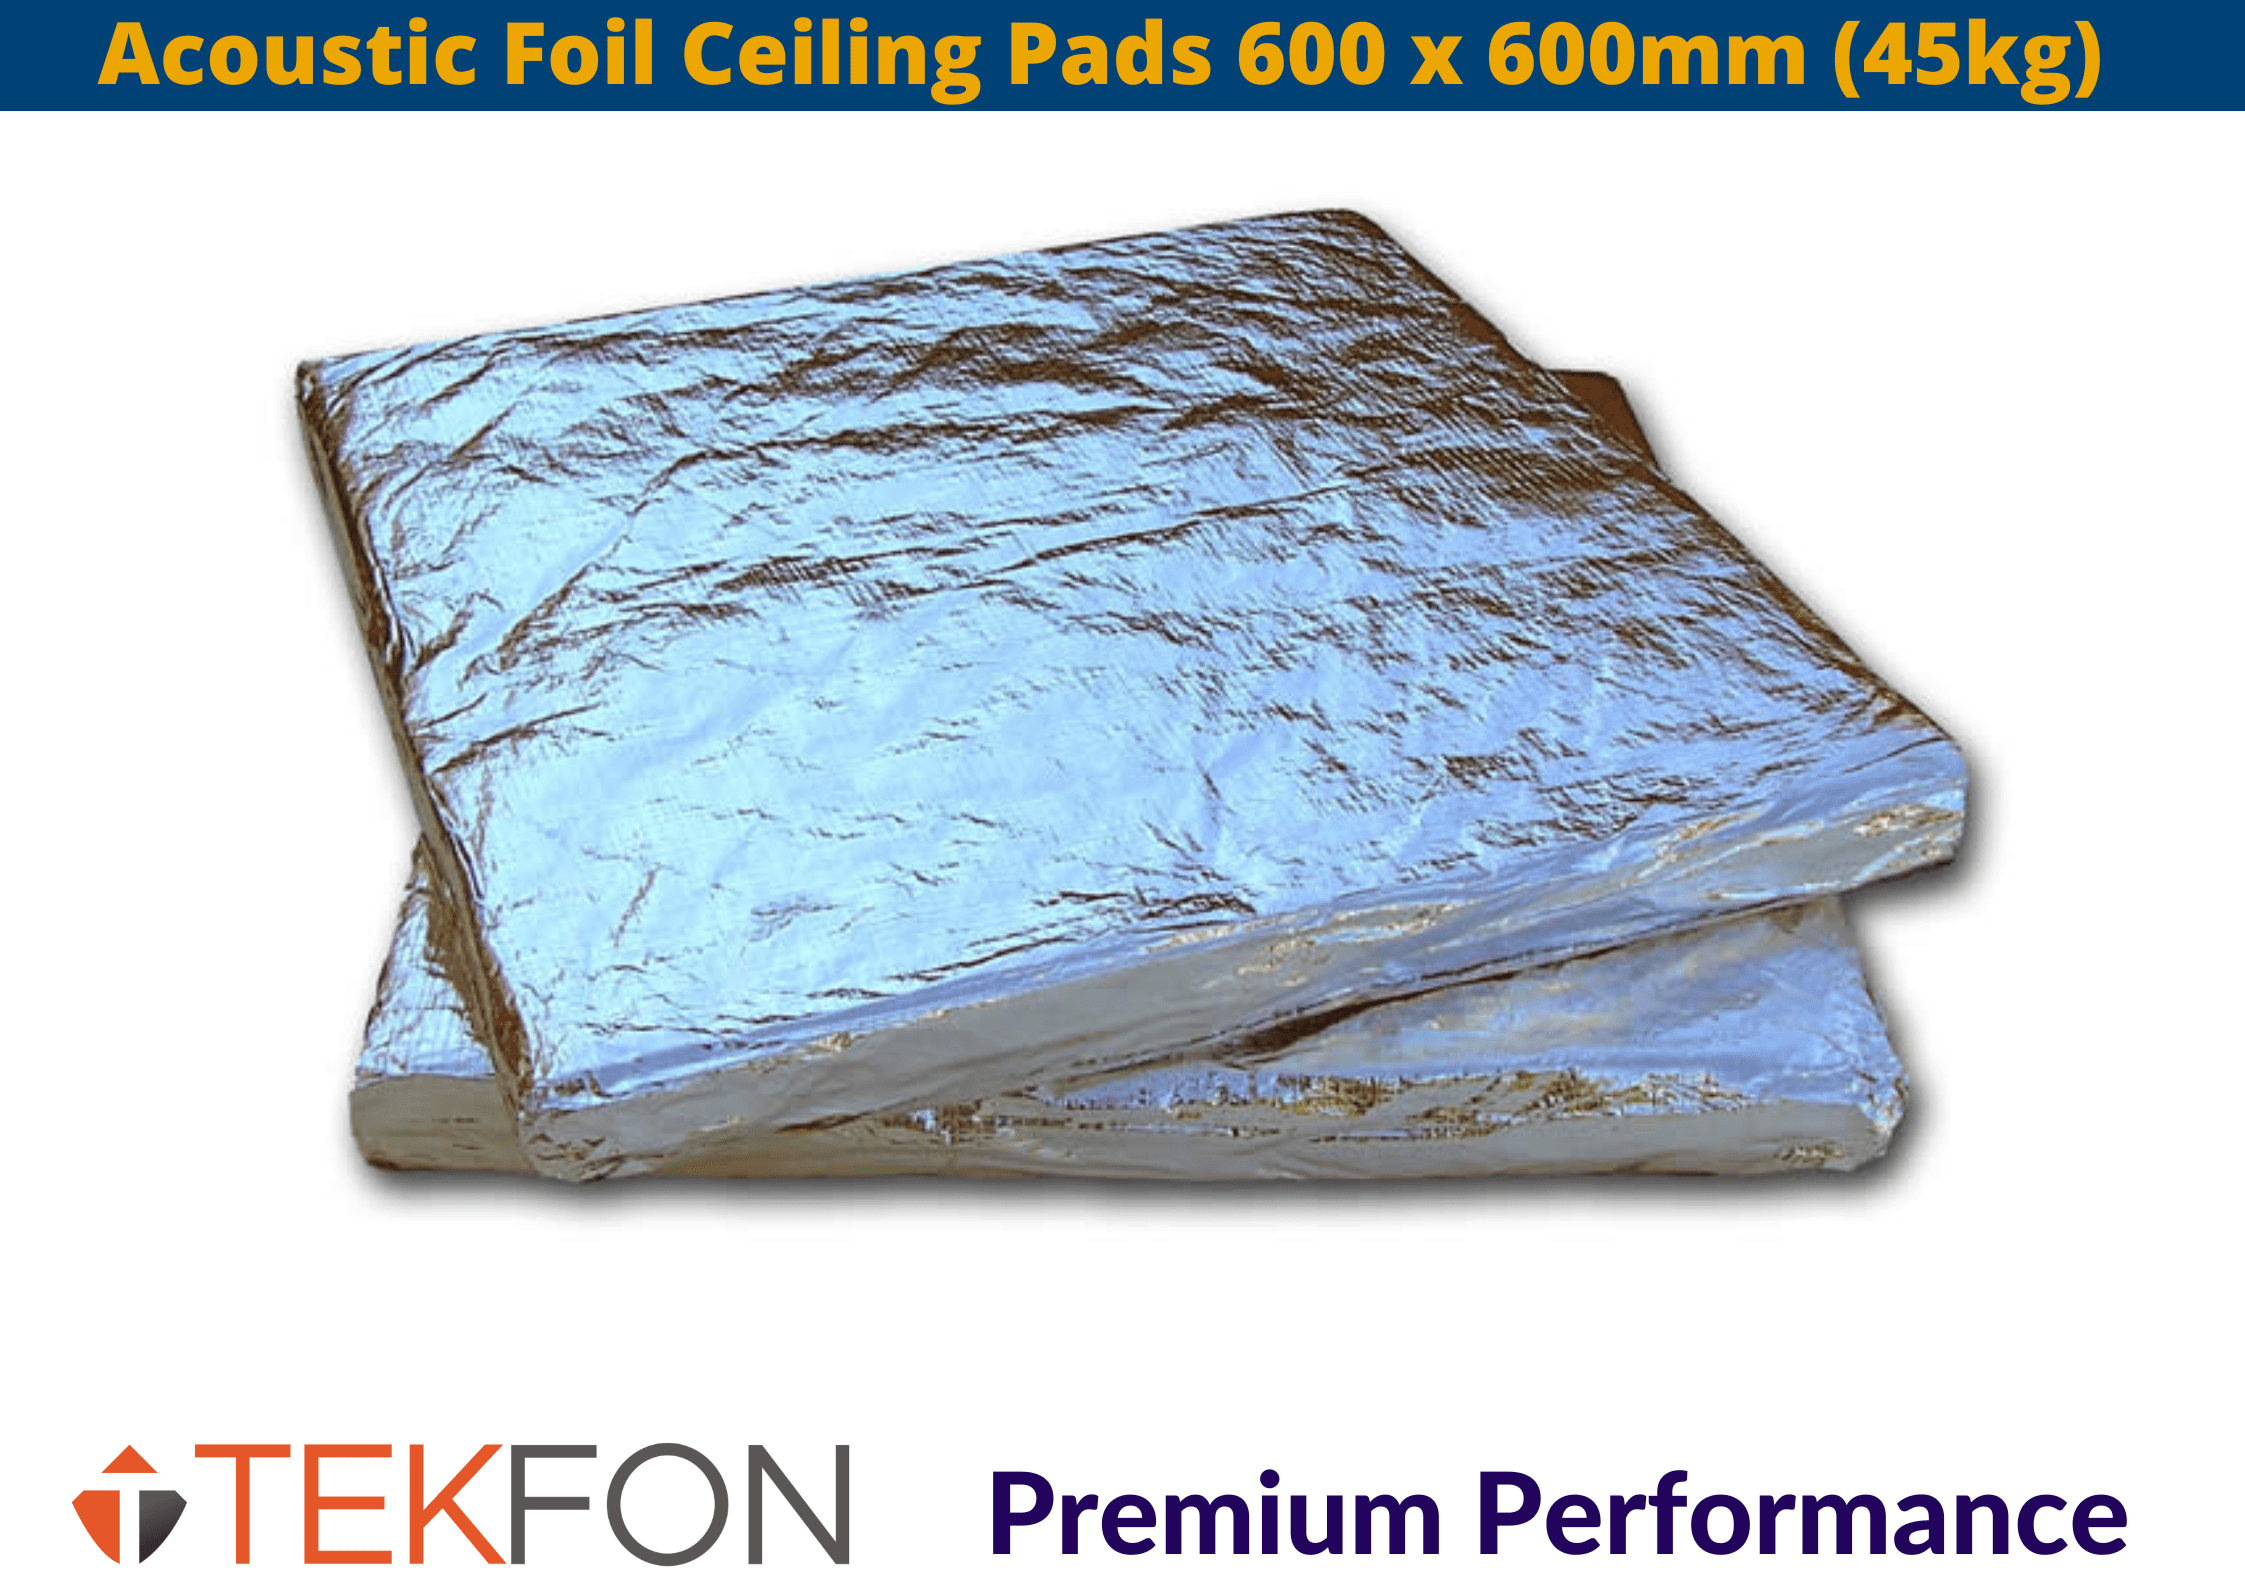 Tekfon Tekfon Acoustic Foil Ceiling Pads | 600 x 600mm (45kgm3) Acoustic Foil Ceiling Pads 600 x 600mm (45kg) | insulationuk.co.uk